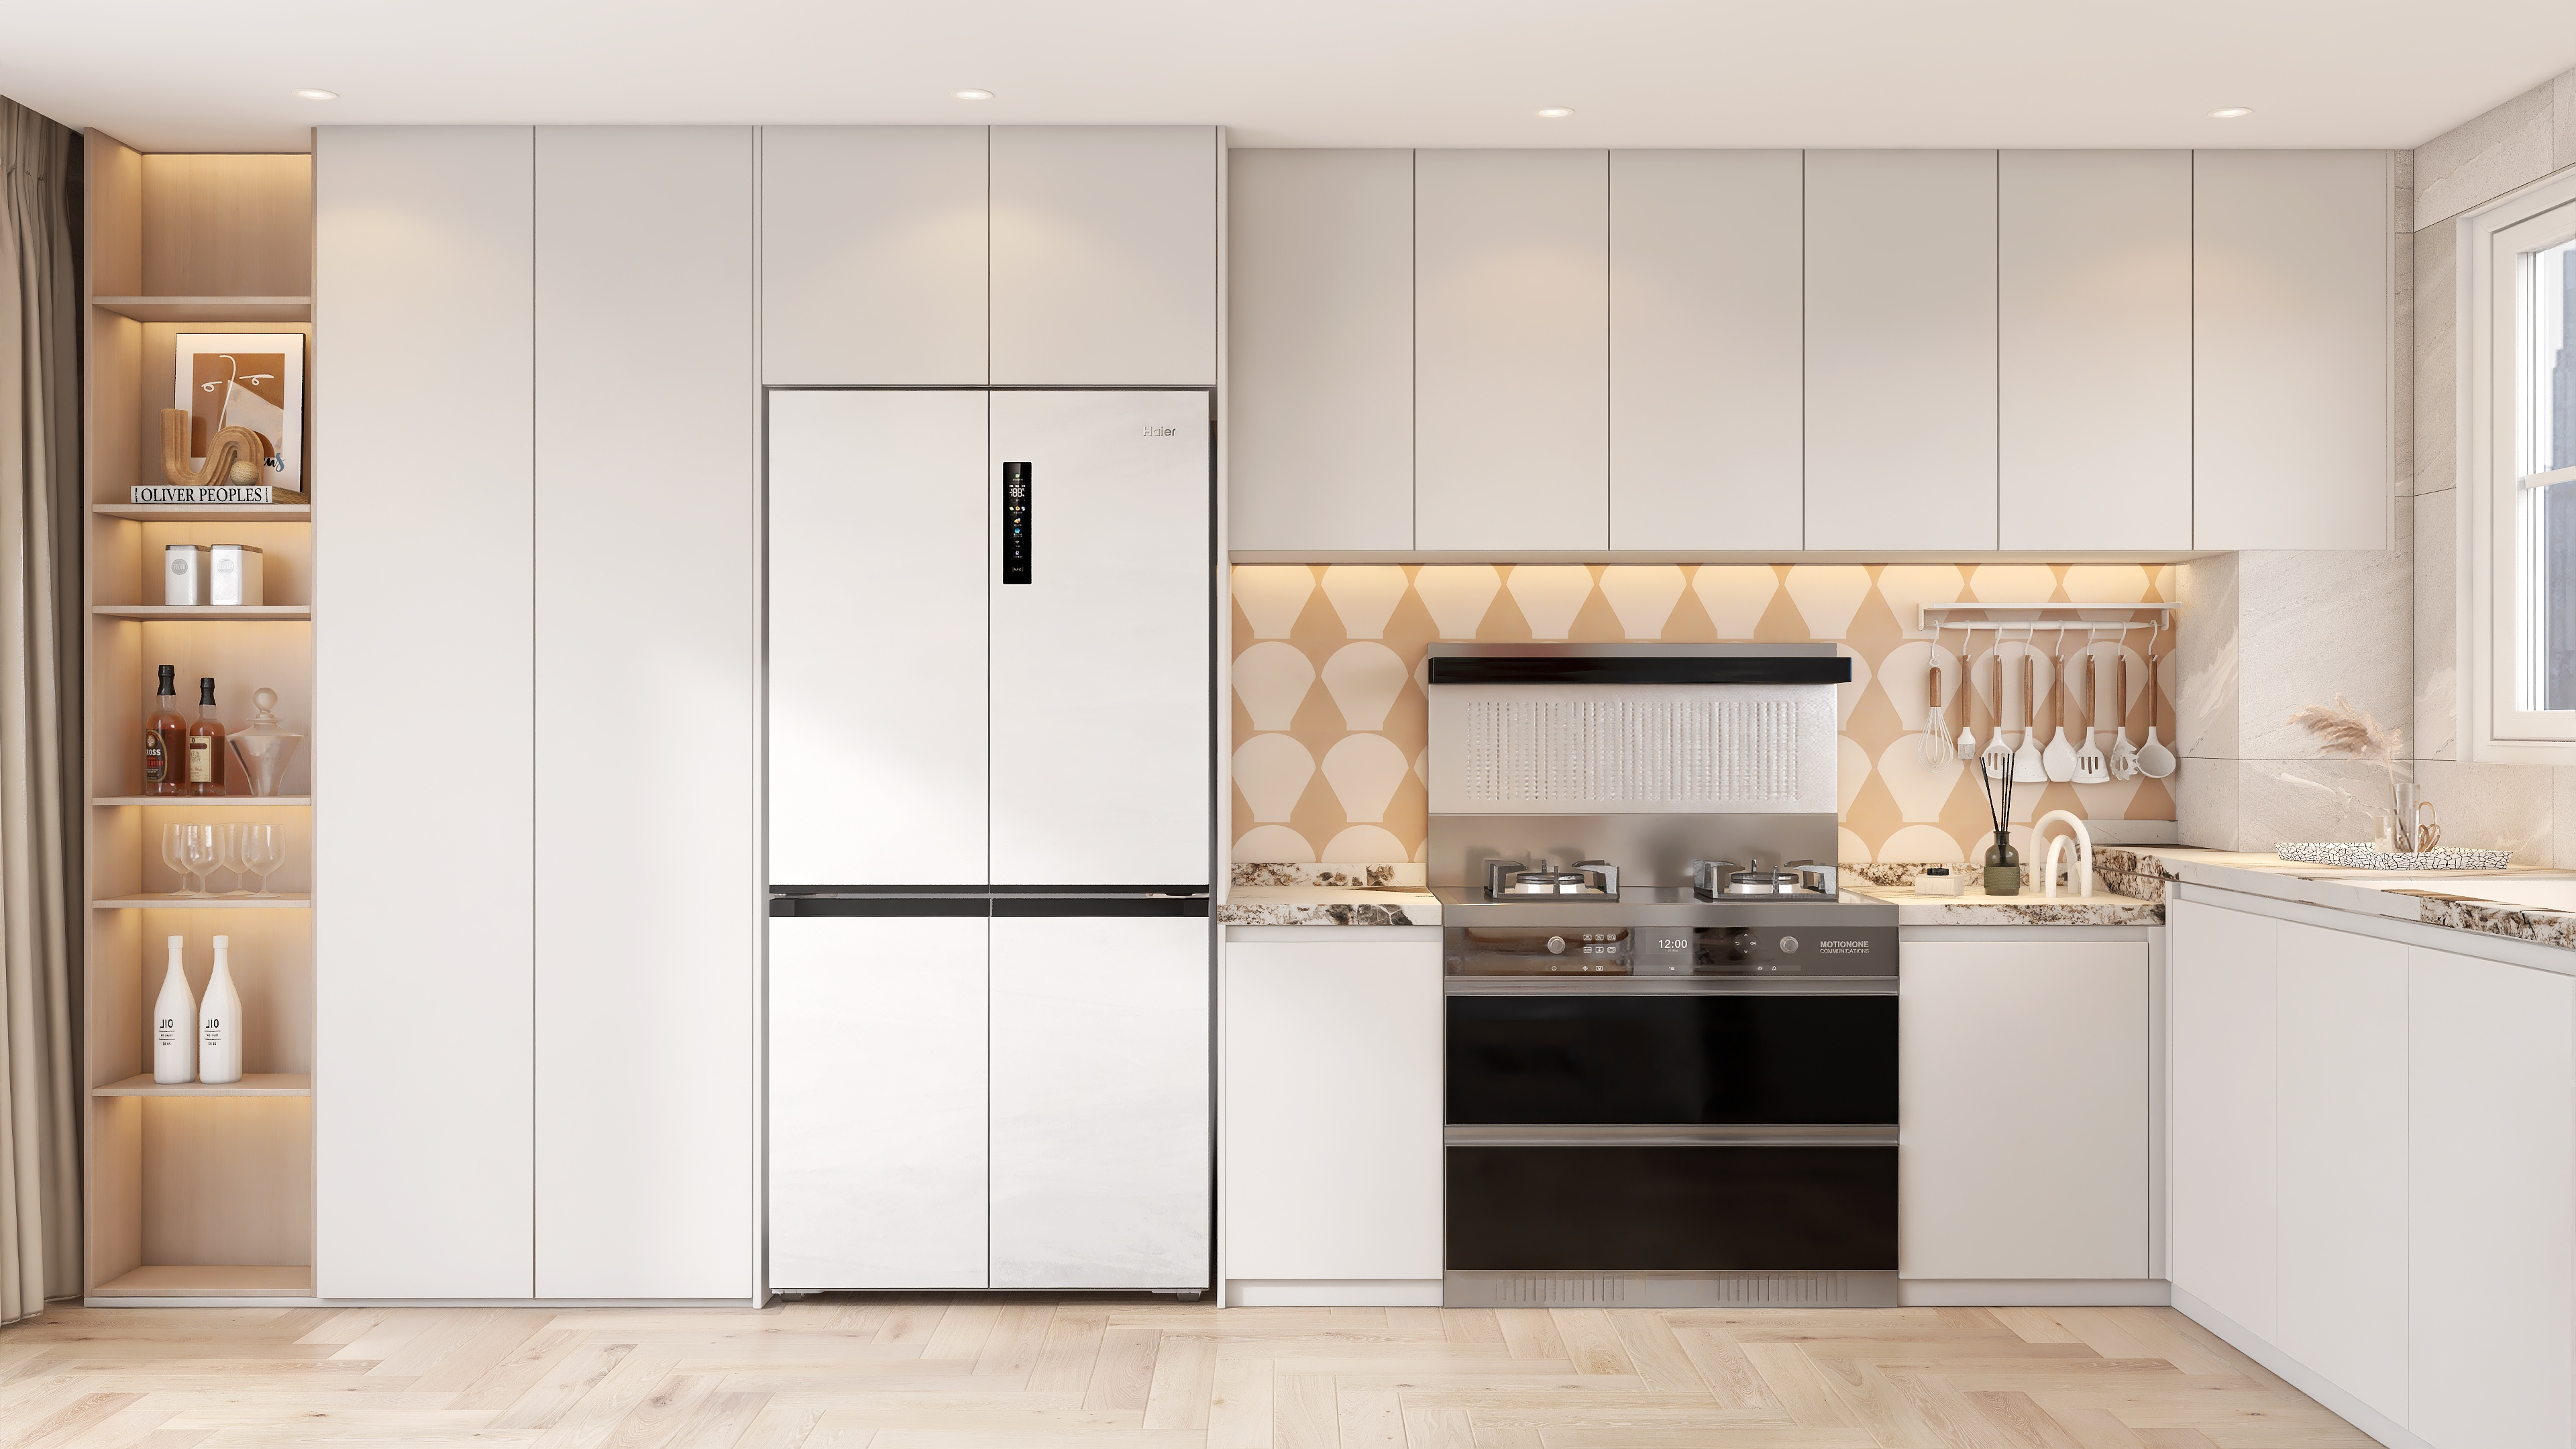 海尔首款超薄零嵌冰箱亮相520强势引领新一代厨房趋势